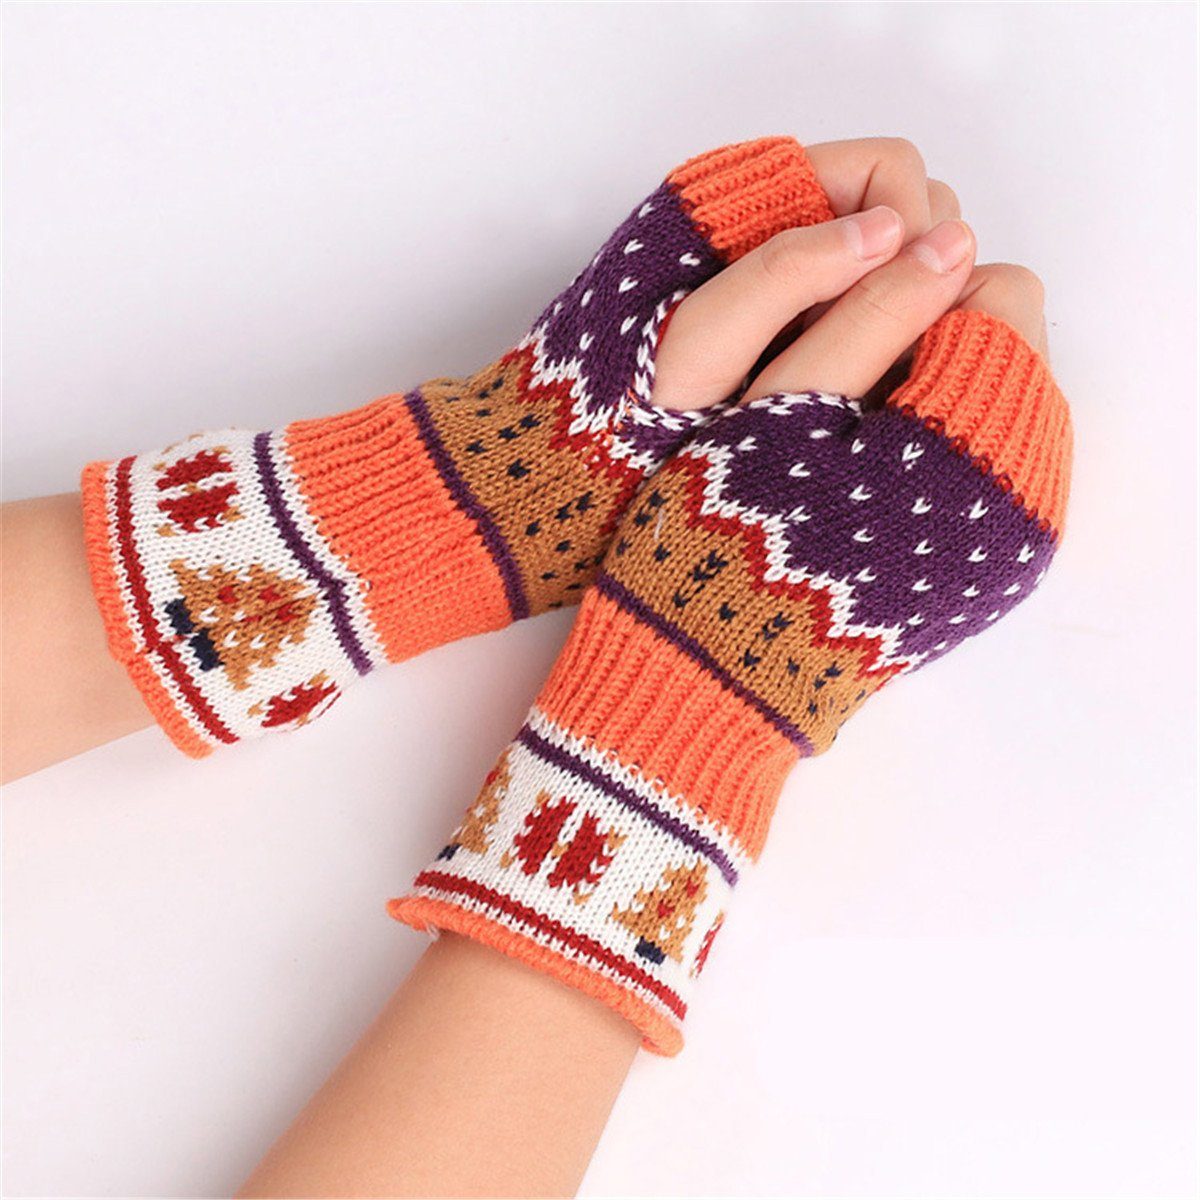 Die Sterne Trikot-Handschuhe Fingerlose Strickhandschuhe im skandinavischen Design, mehrfarbig orange